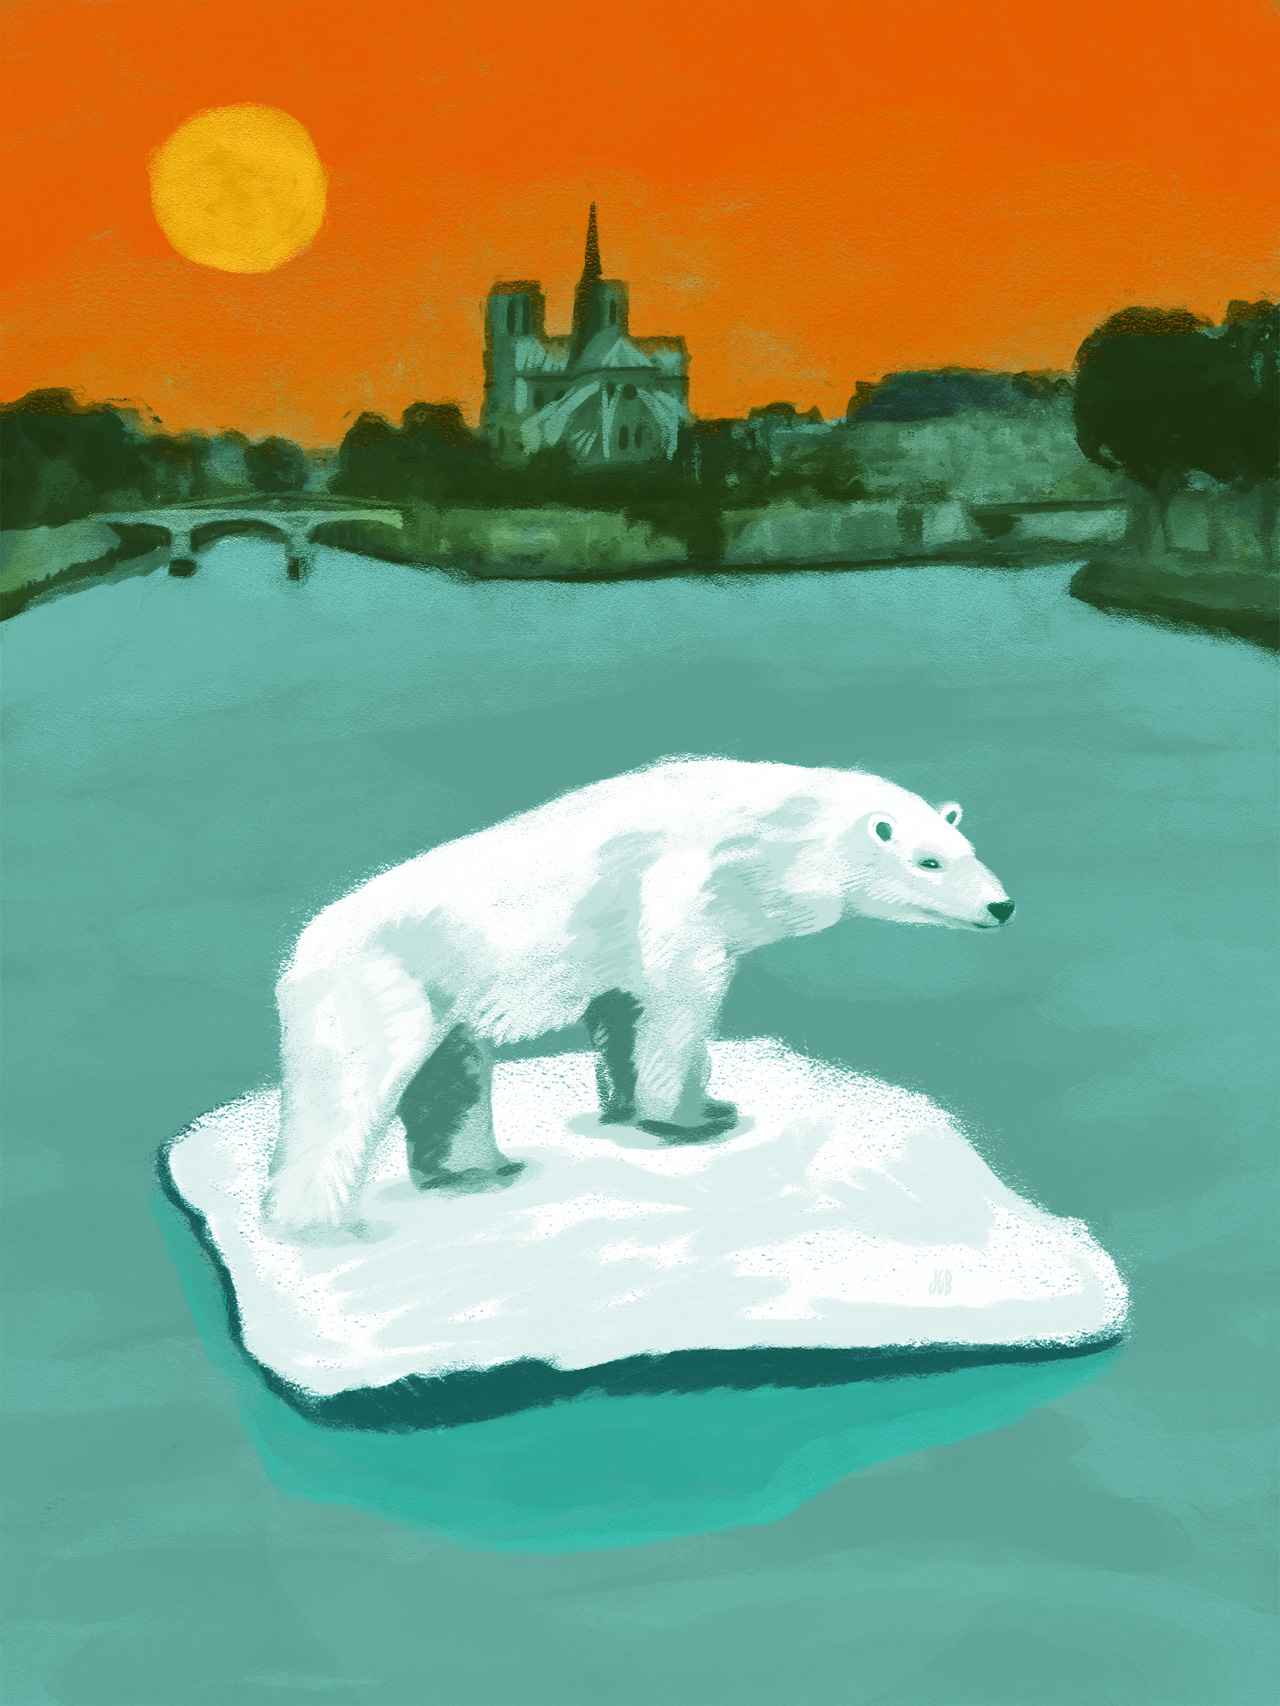 París bien vale un acuerdo que ponga fin al cambio climático